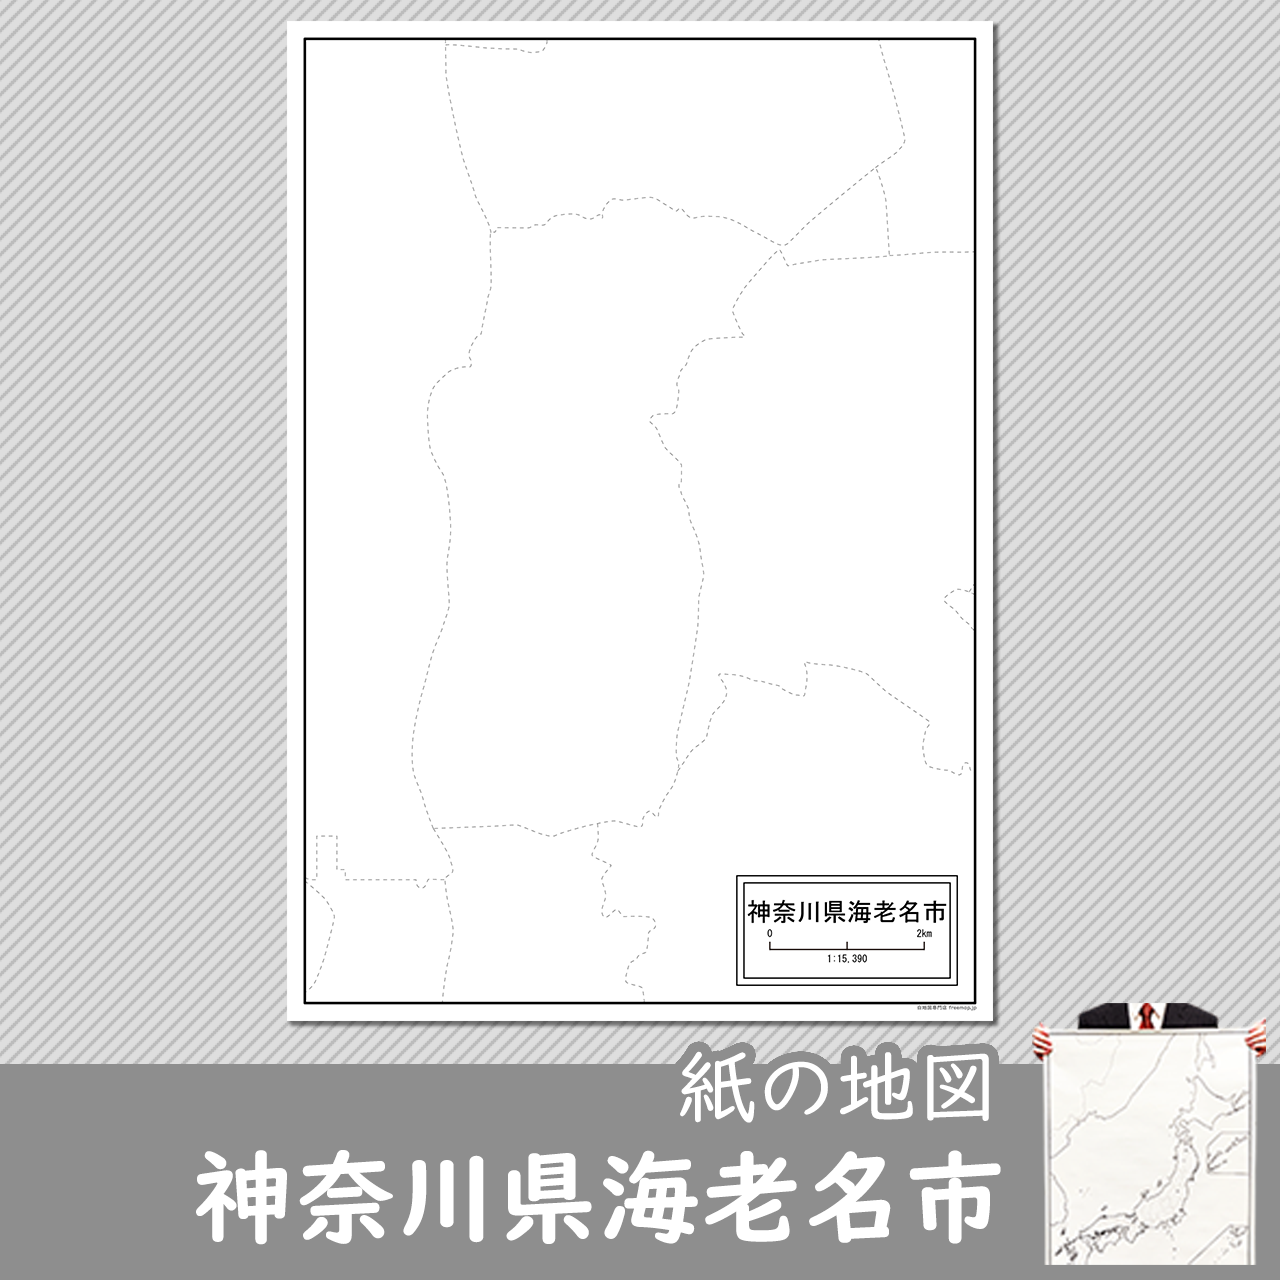 神奈川県海老名市の紙の白地図